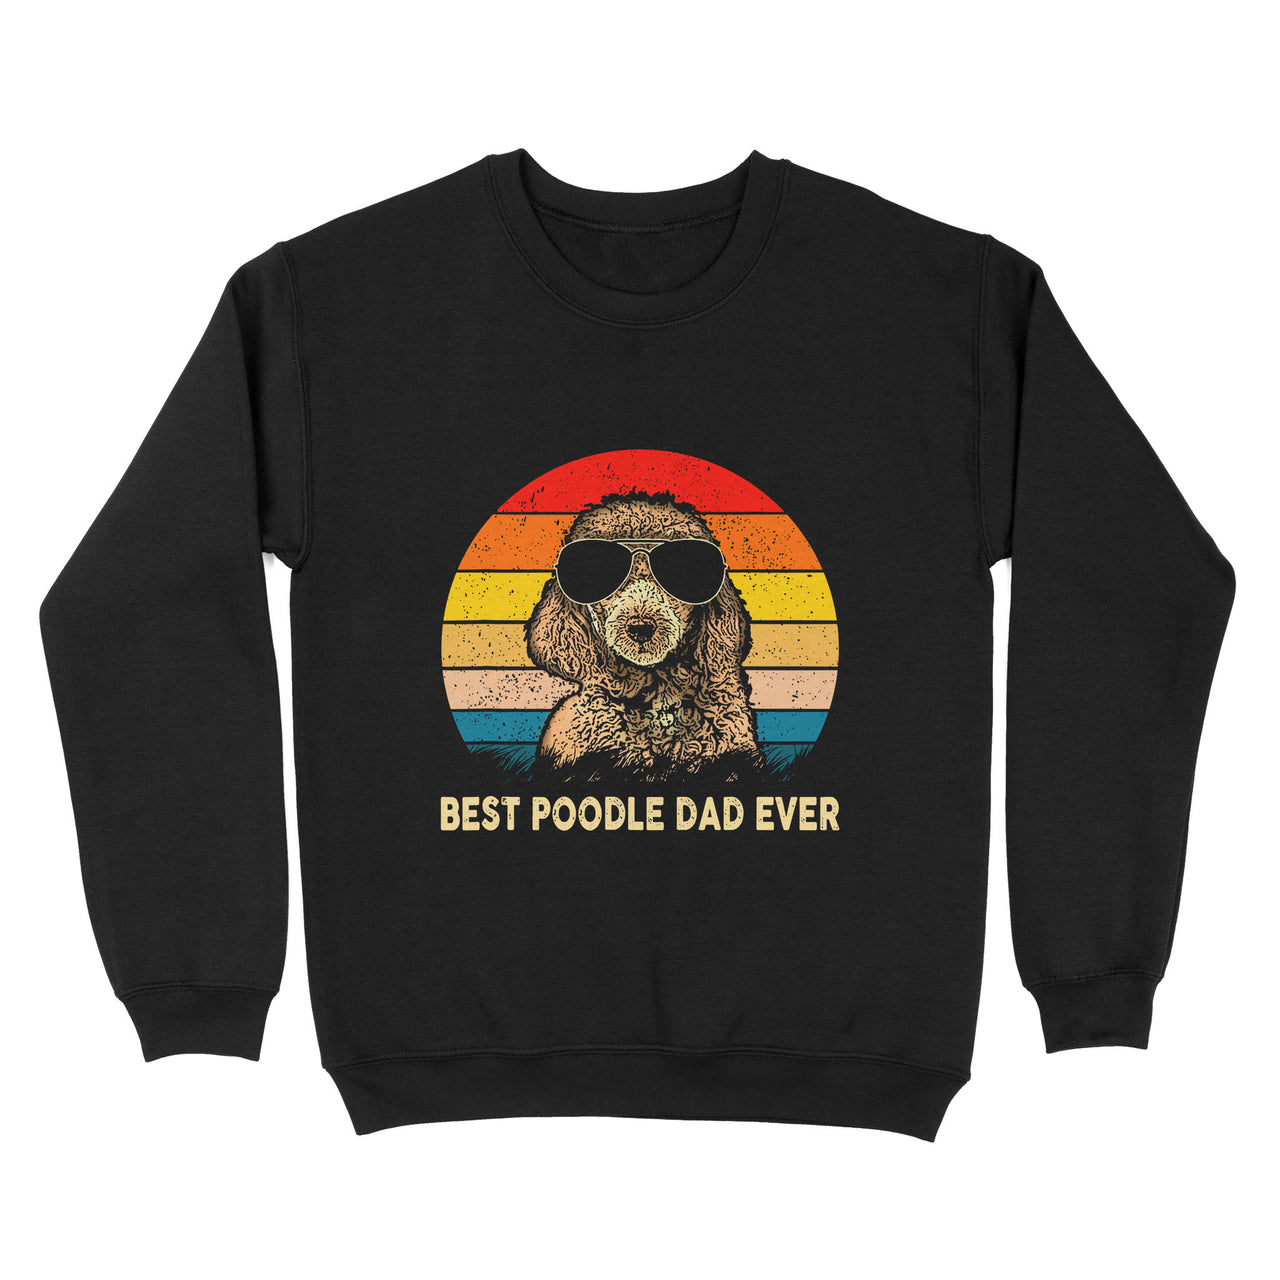 Retro Gift For Poodle Lovers - Vintage Best Poodle Dad Ever - Standard Crew Neck Sweatshirt